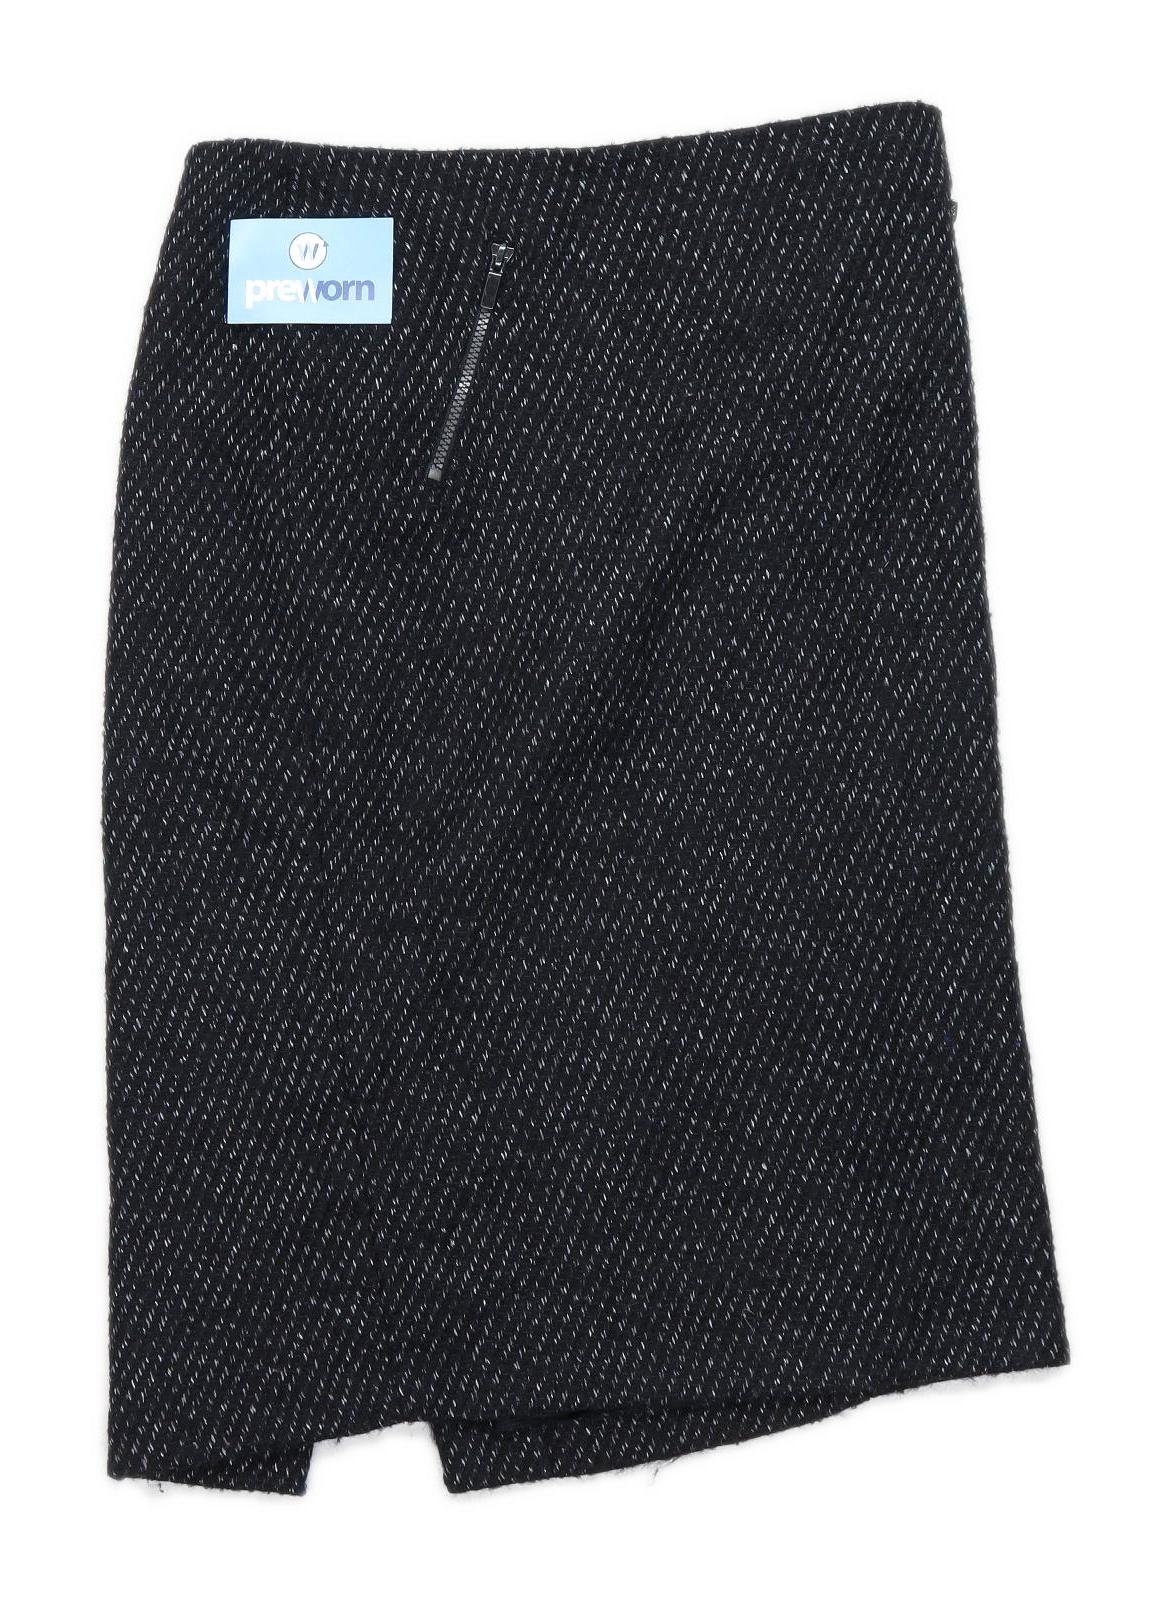 Marks & Spencer Womens Size 12 Wool Blend Black Skirt (Regular)